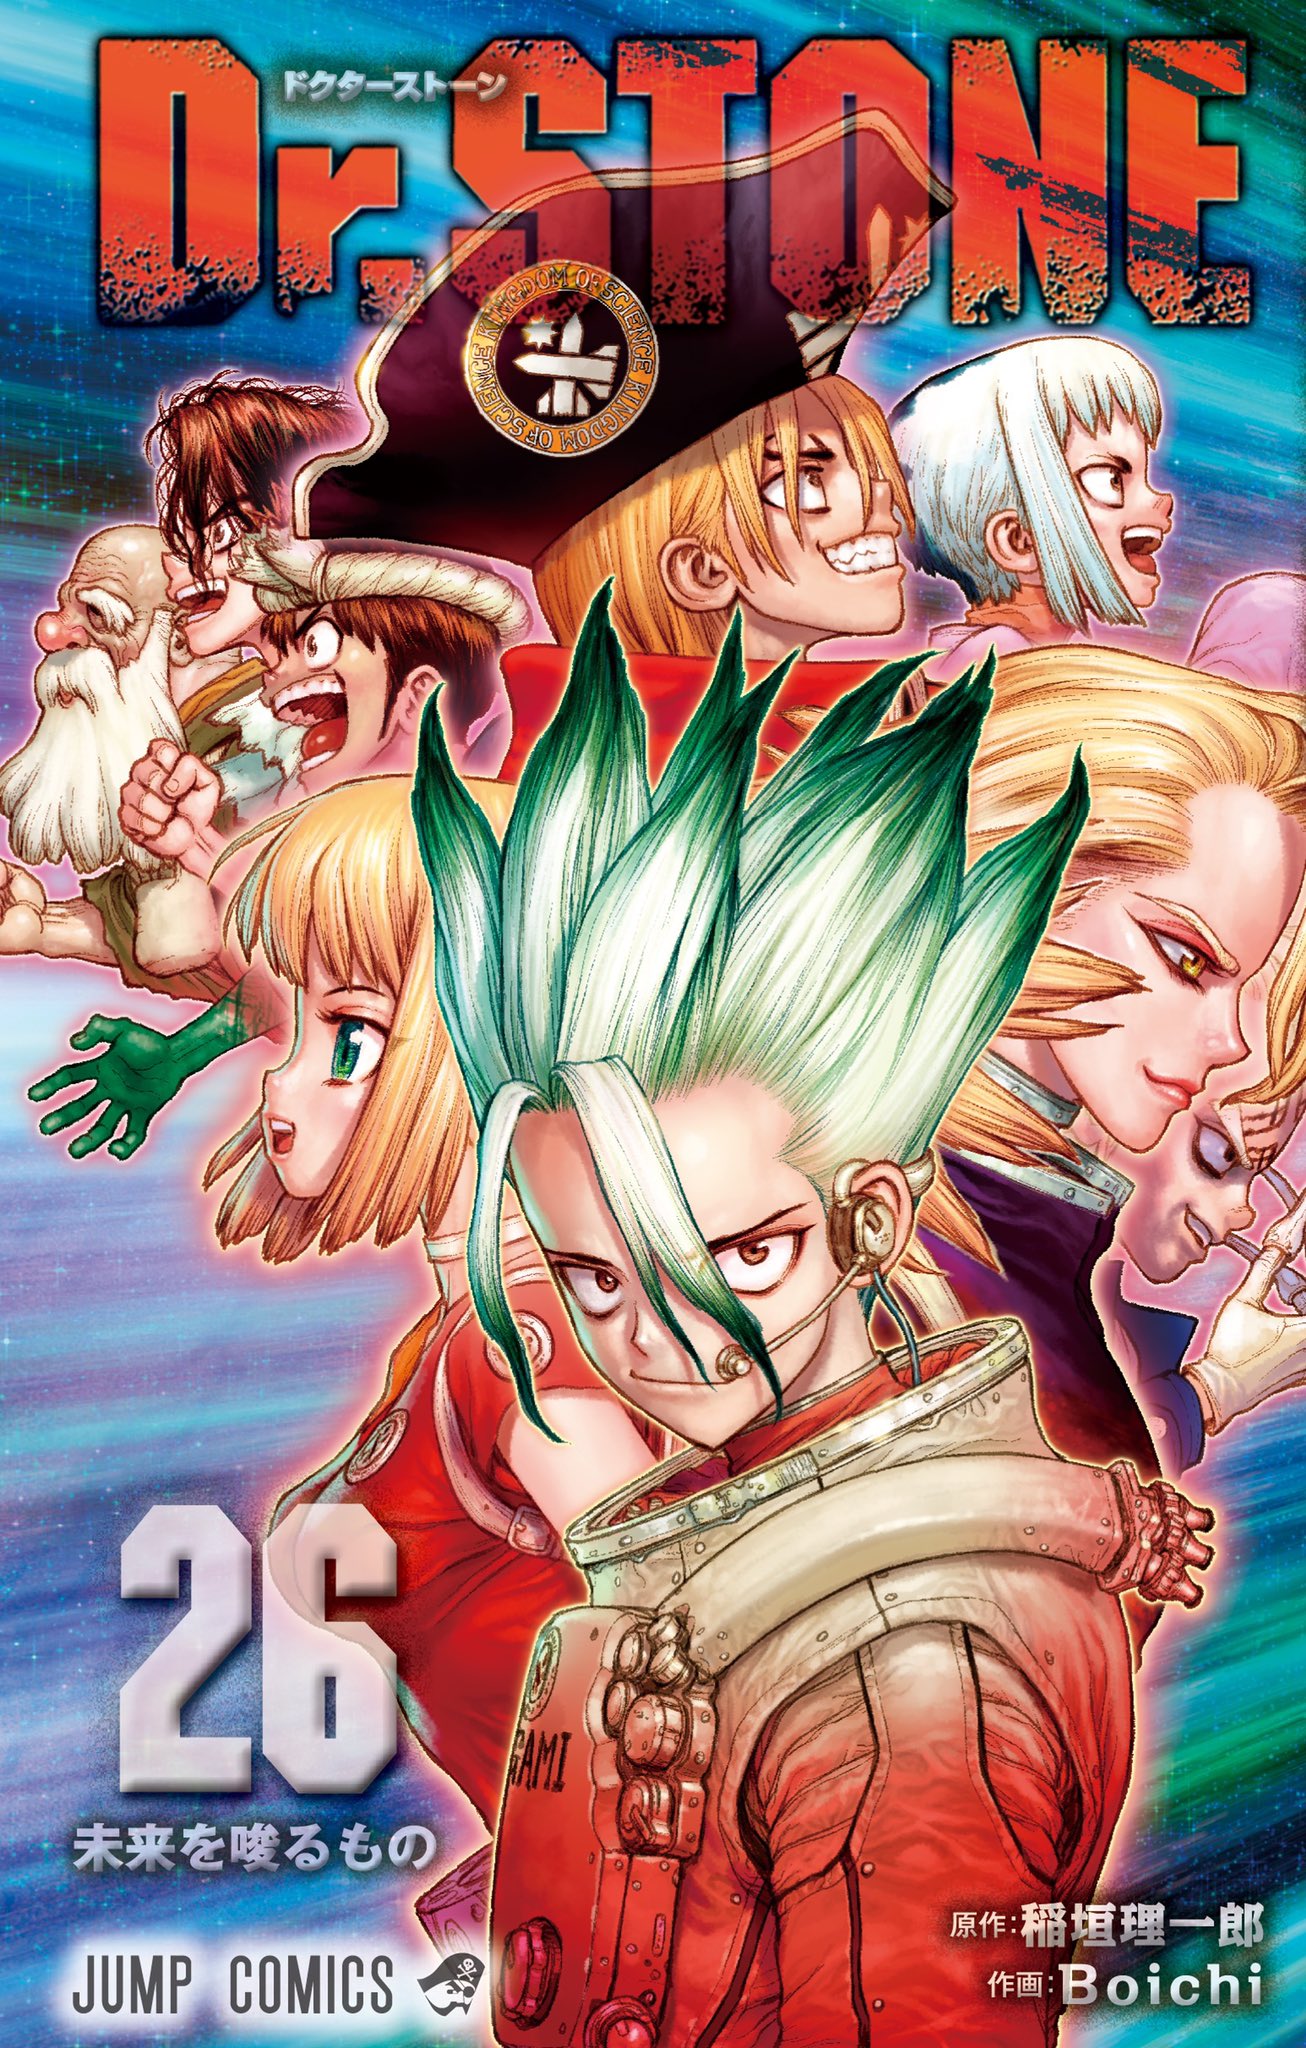 El manga Koi wa Sekai Seifuku no Ato de reveló las portadas oficiales de su  quinto volumen